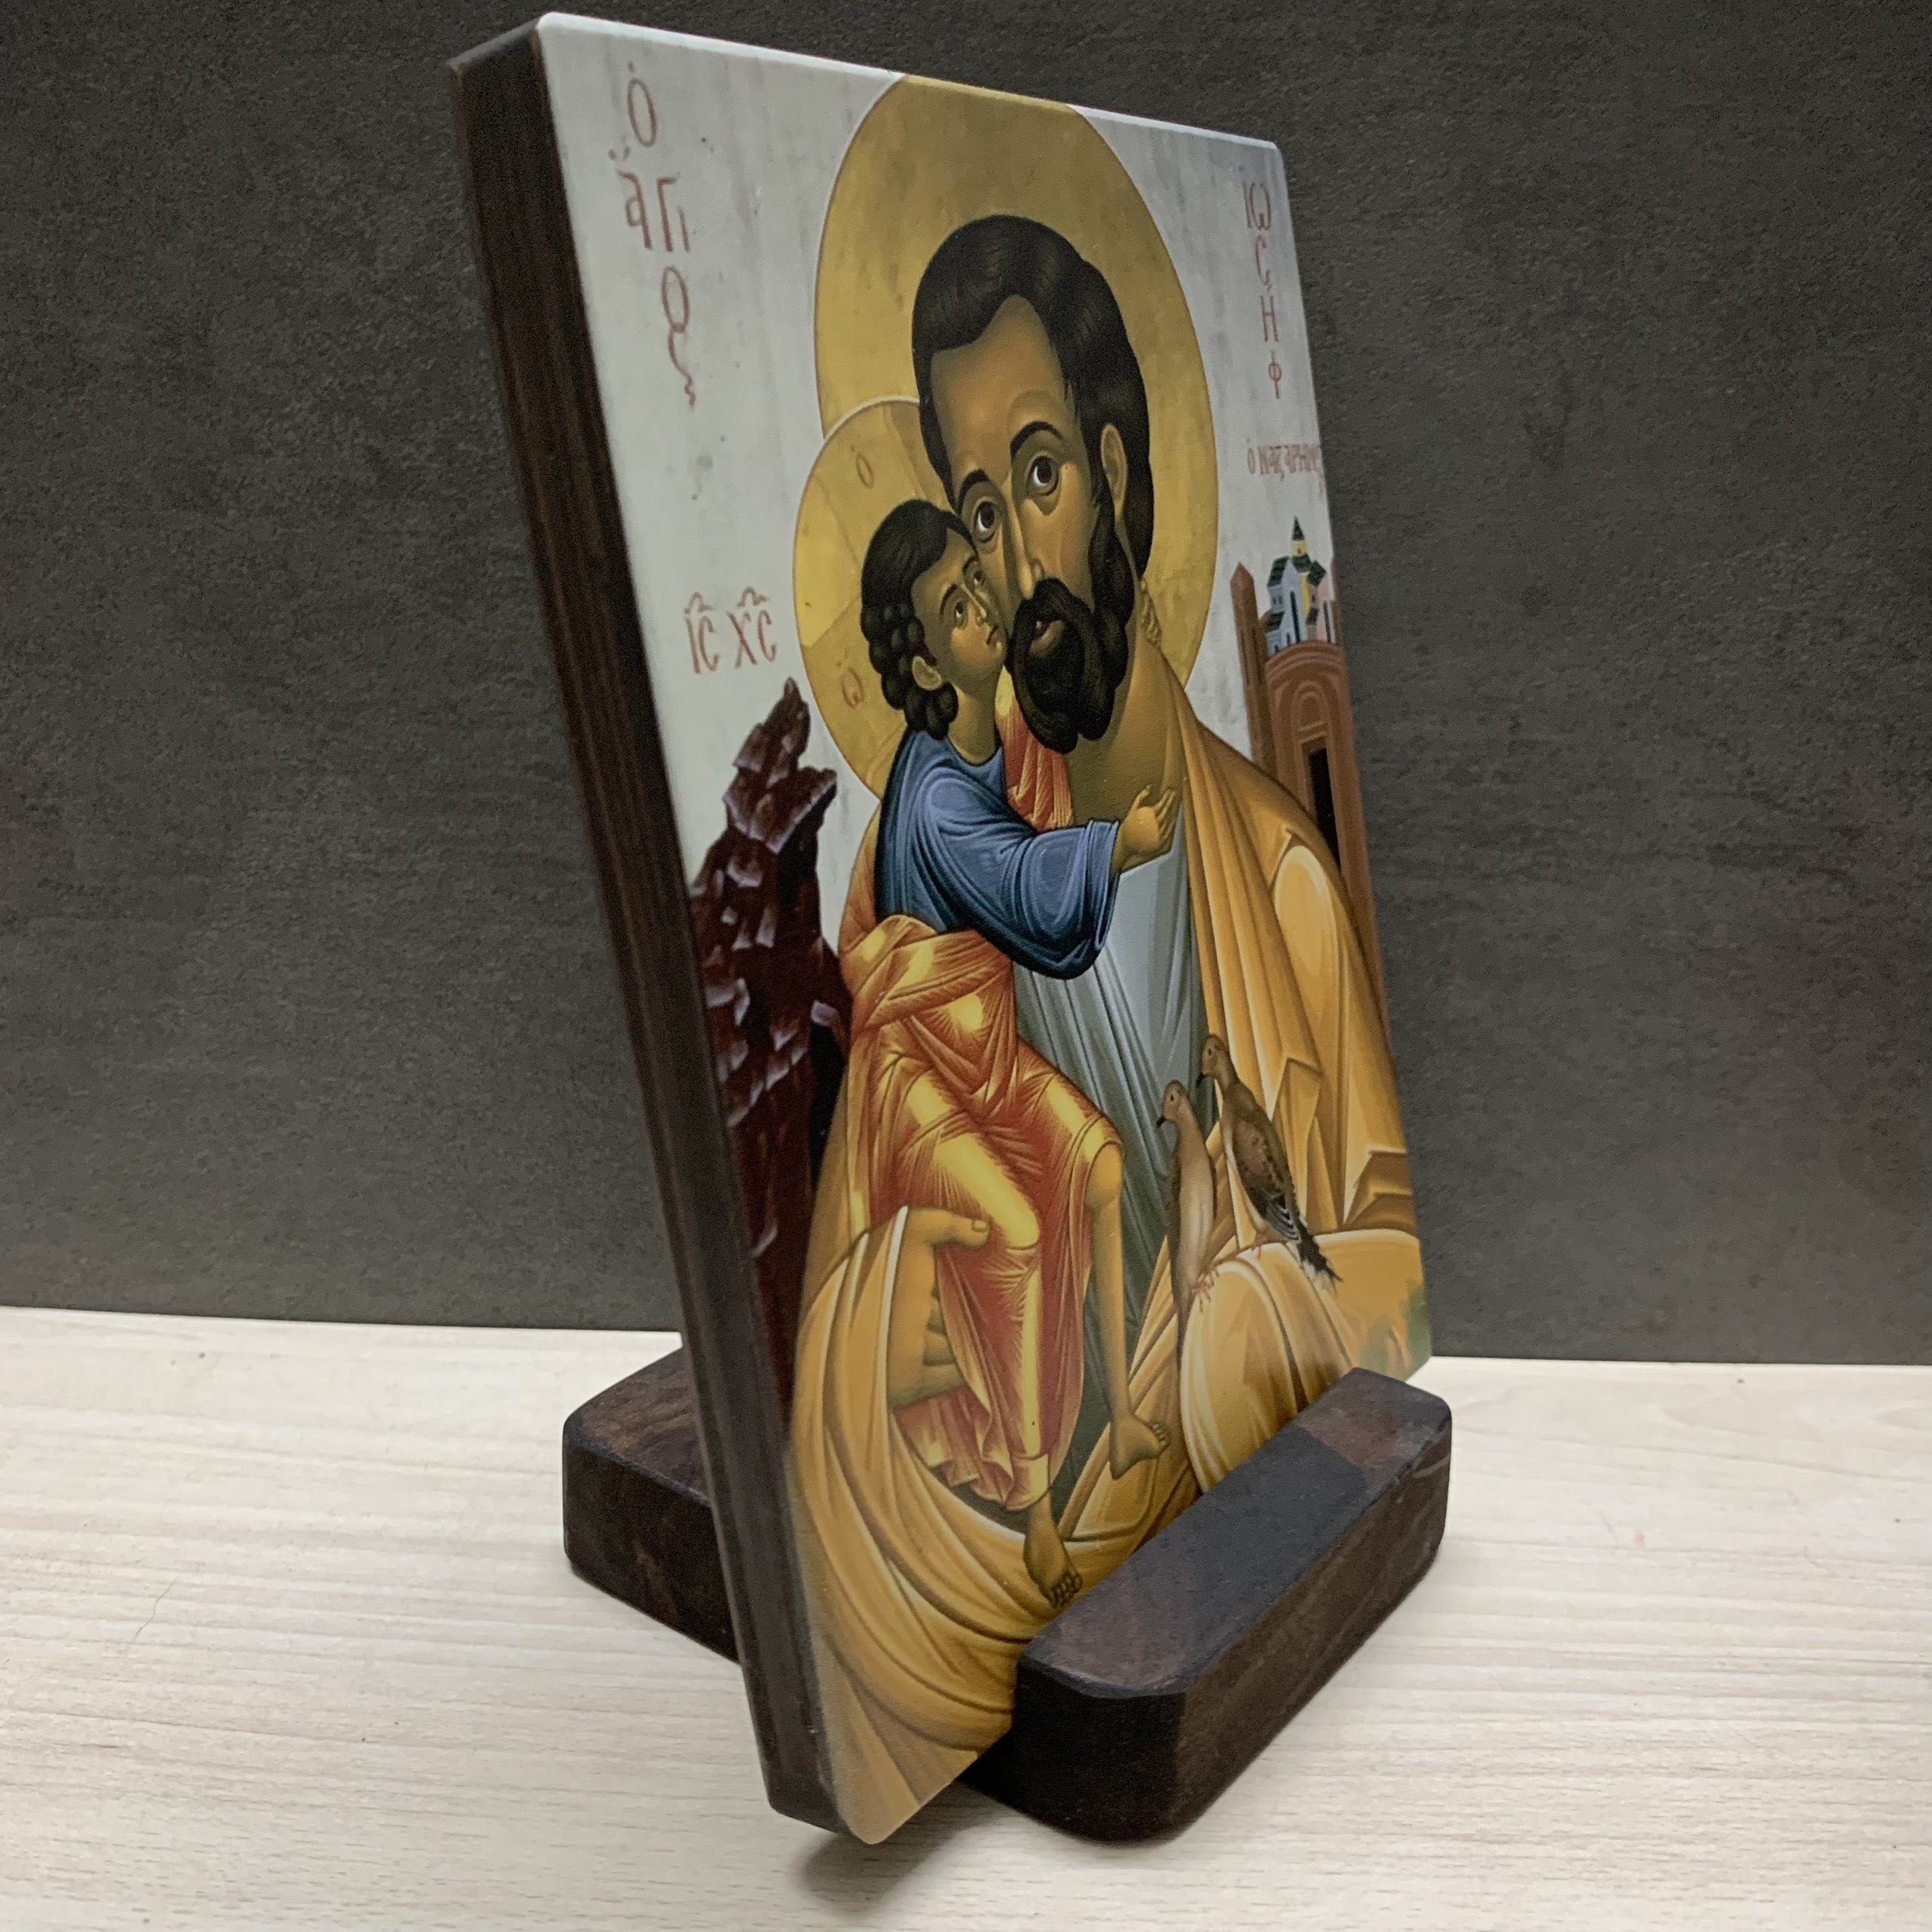 Tranh Gỗ Icon Thánh Giuse Bồng Chúa Giêsu  - Tranh Gỗ Công Giáo Tặng Dịp Bổn Mạng Ý Nghĩa